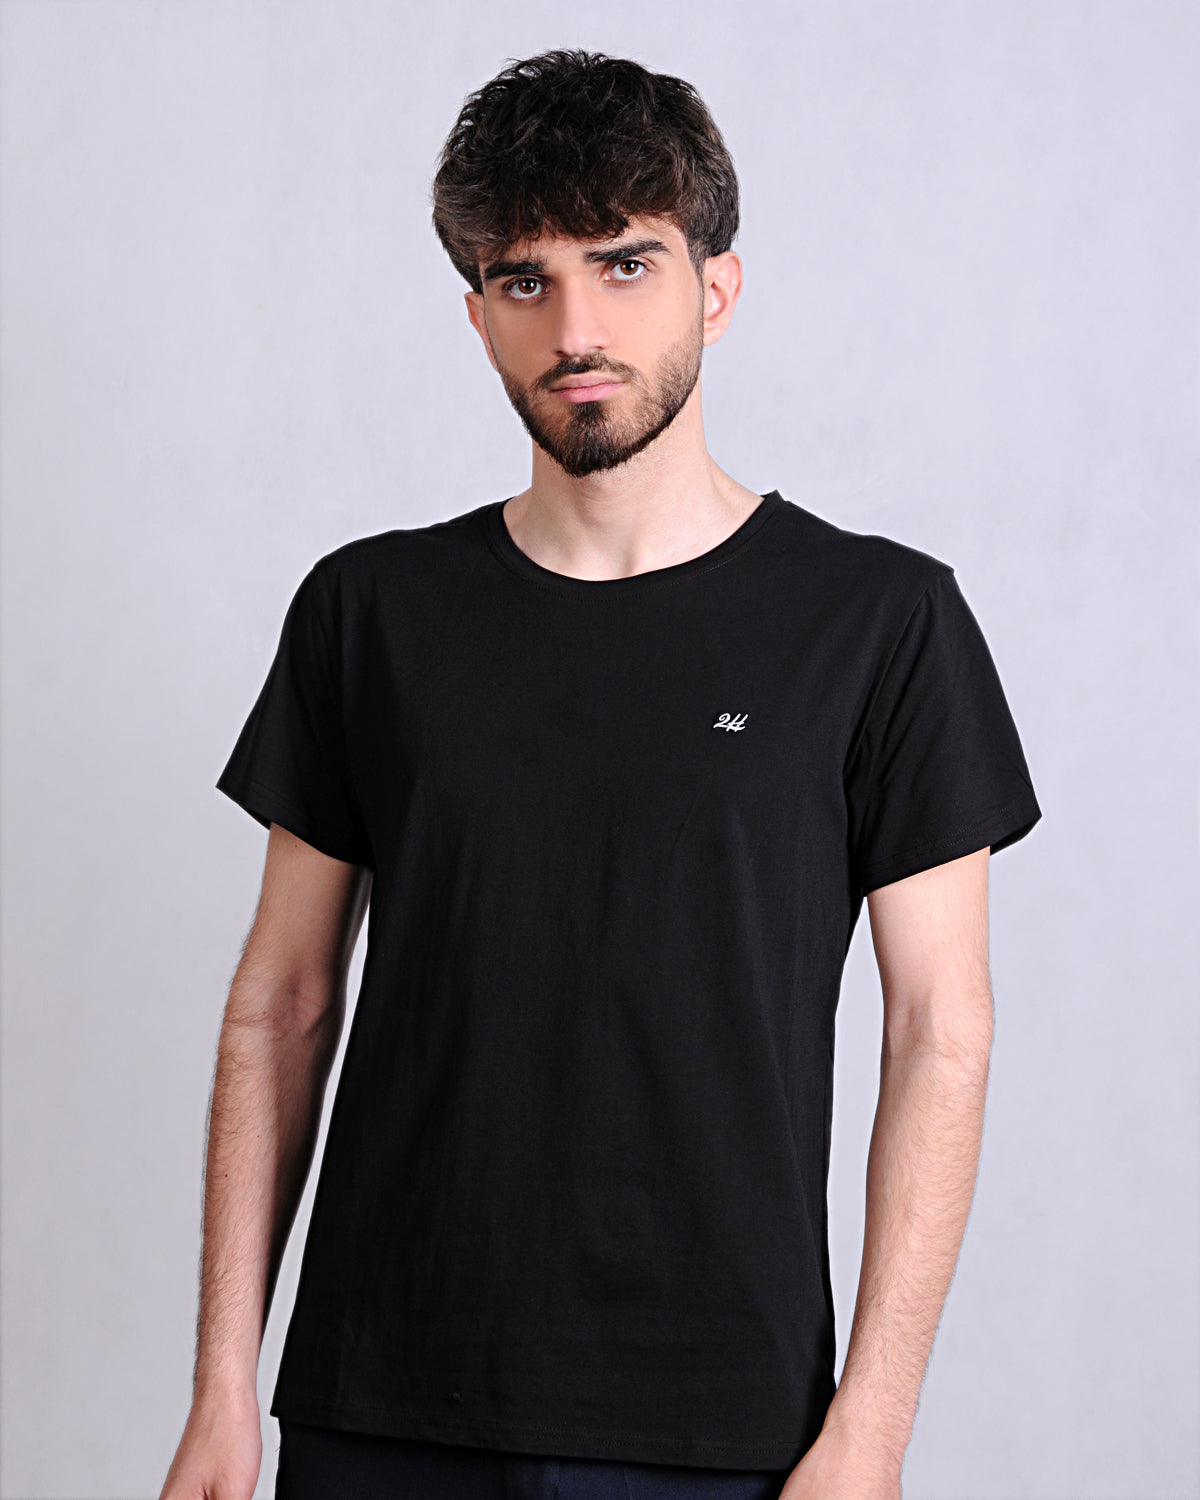 2H #CX81400 Black Short Sleeve Basic T-shirt